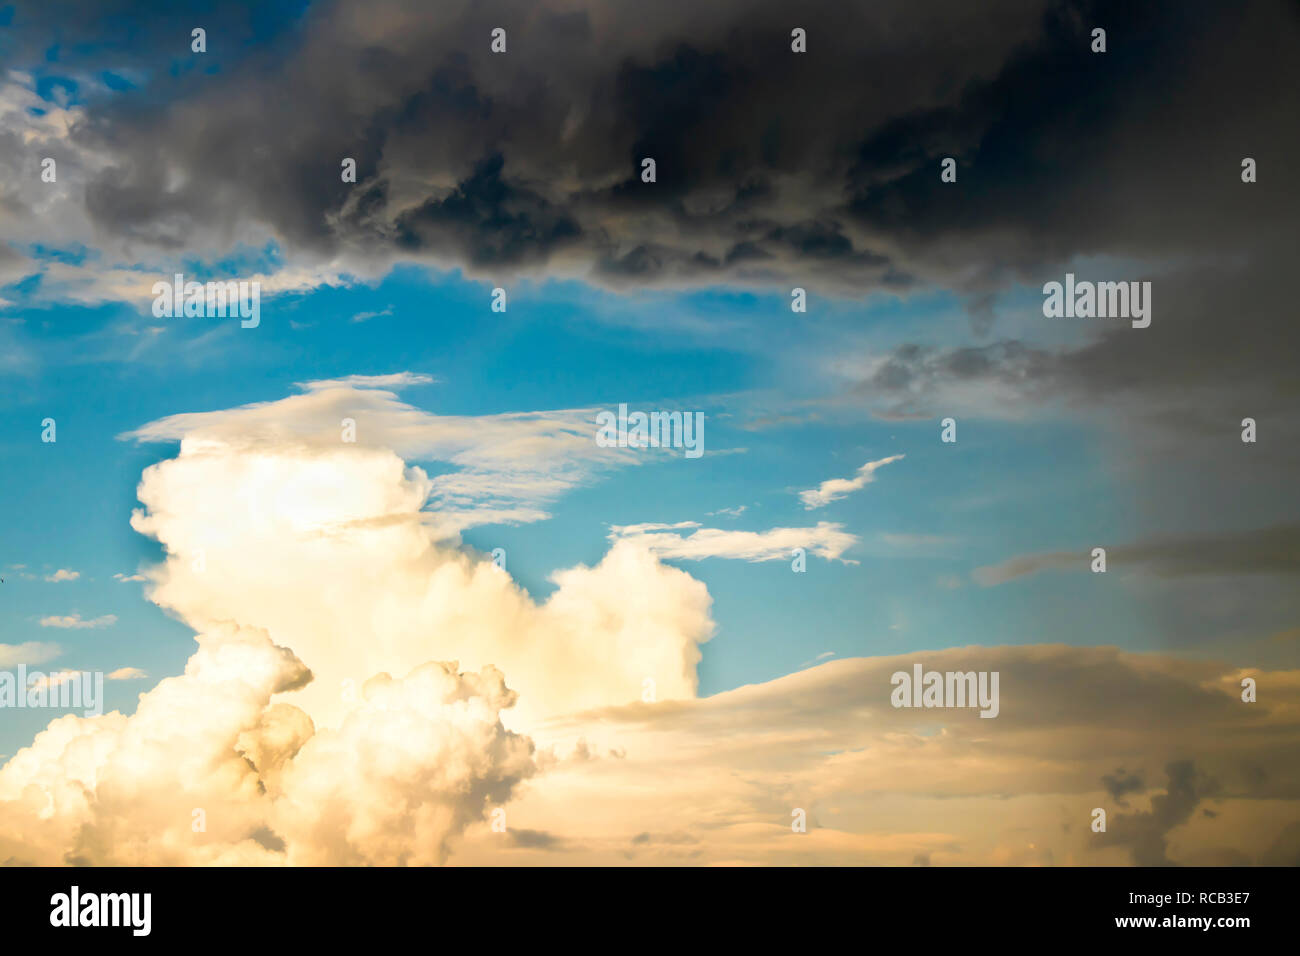 Natur Kraft: dramatische Wolkenhimmel in Kontrast der hellen, sonnigen und dunklen regnerischen Wolken anzeigen Wetter ändern bei starkem Wind im Sommer Stockfoto